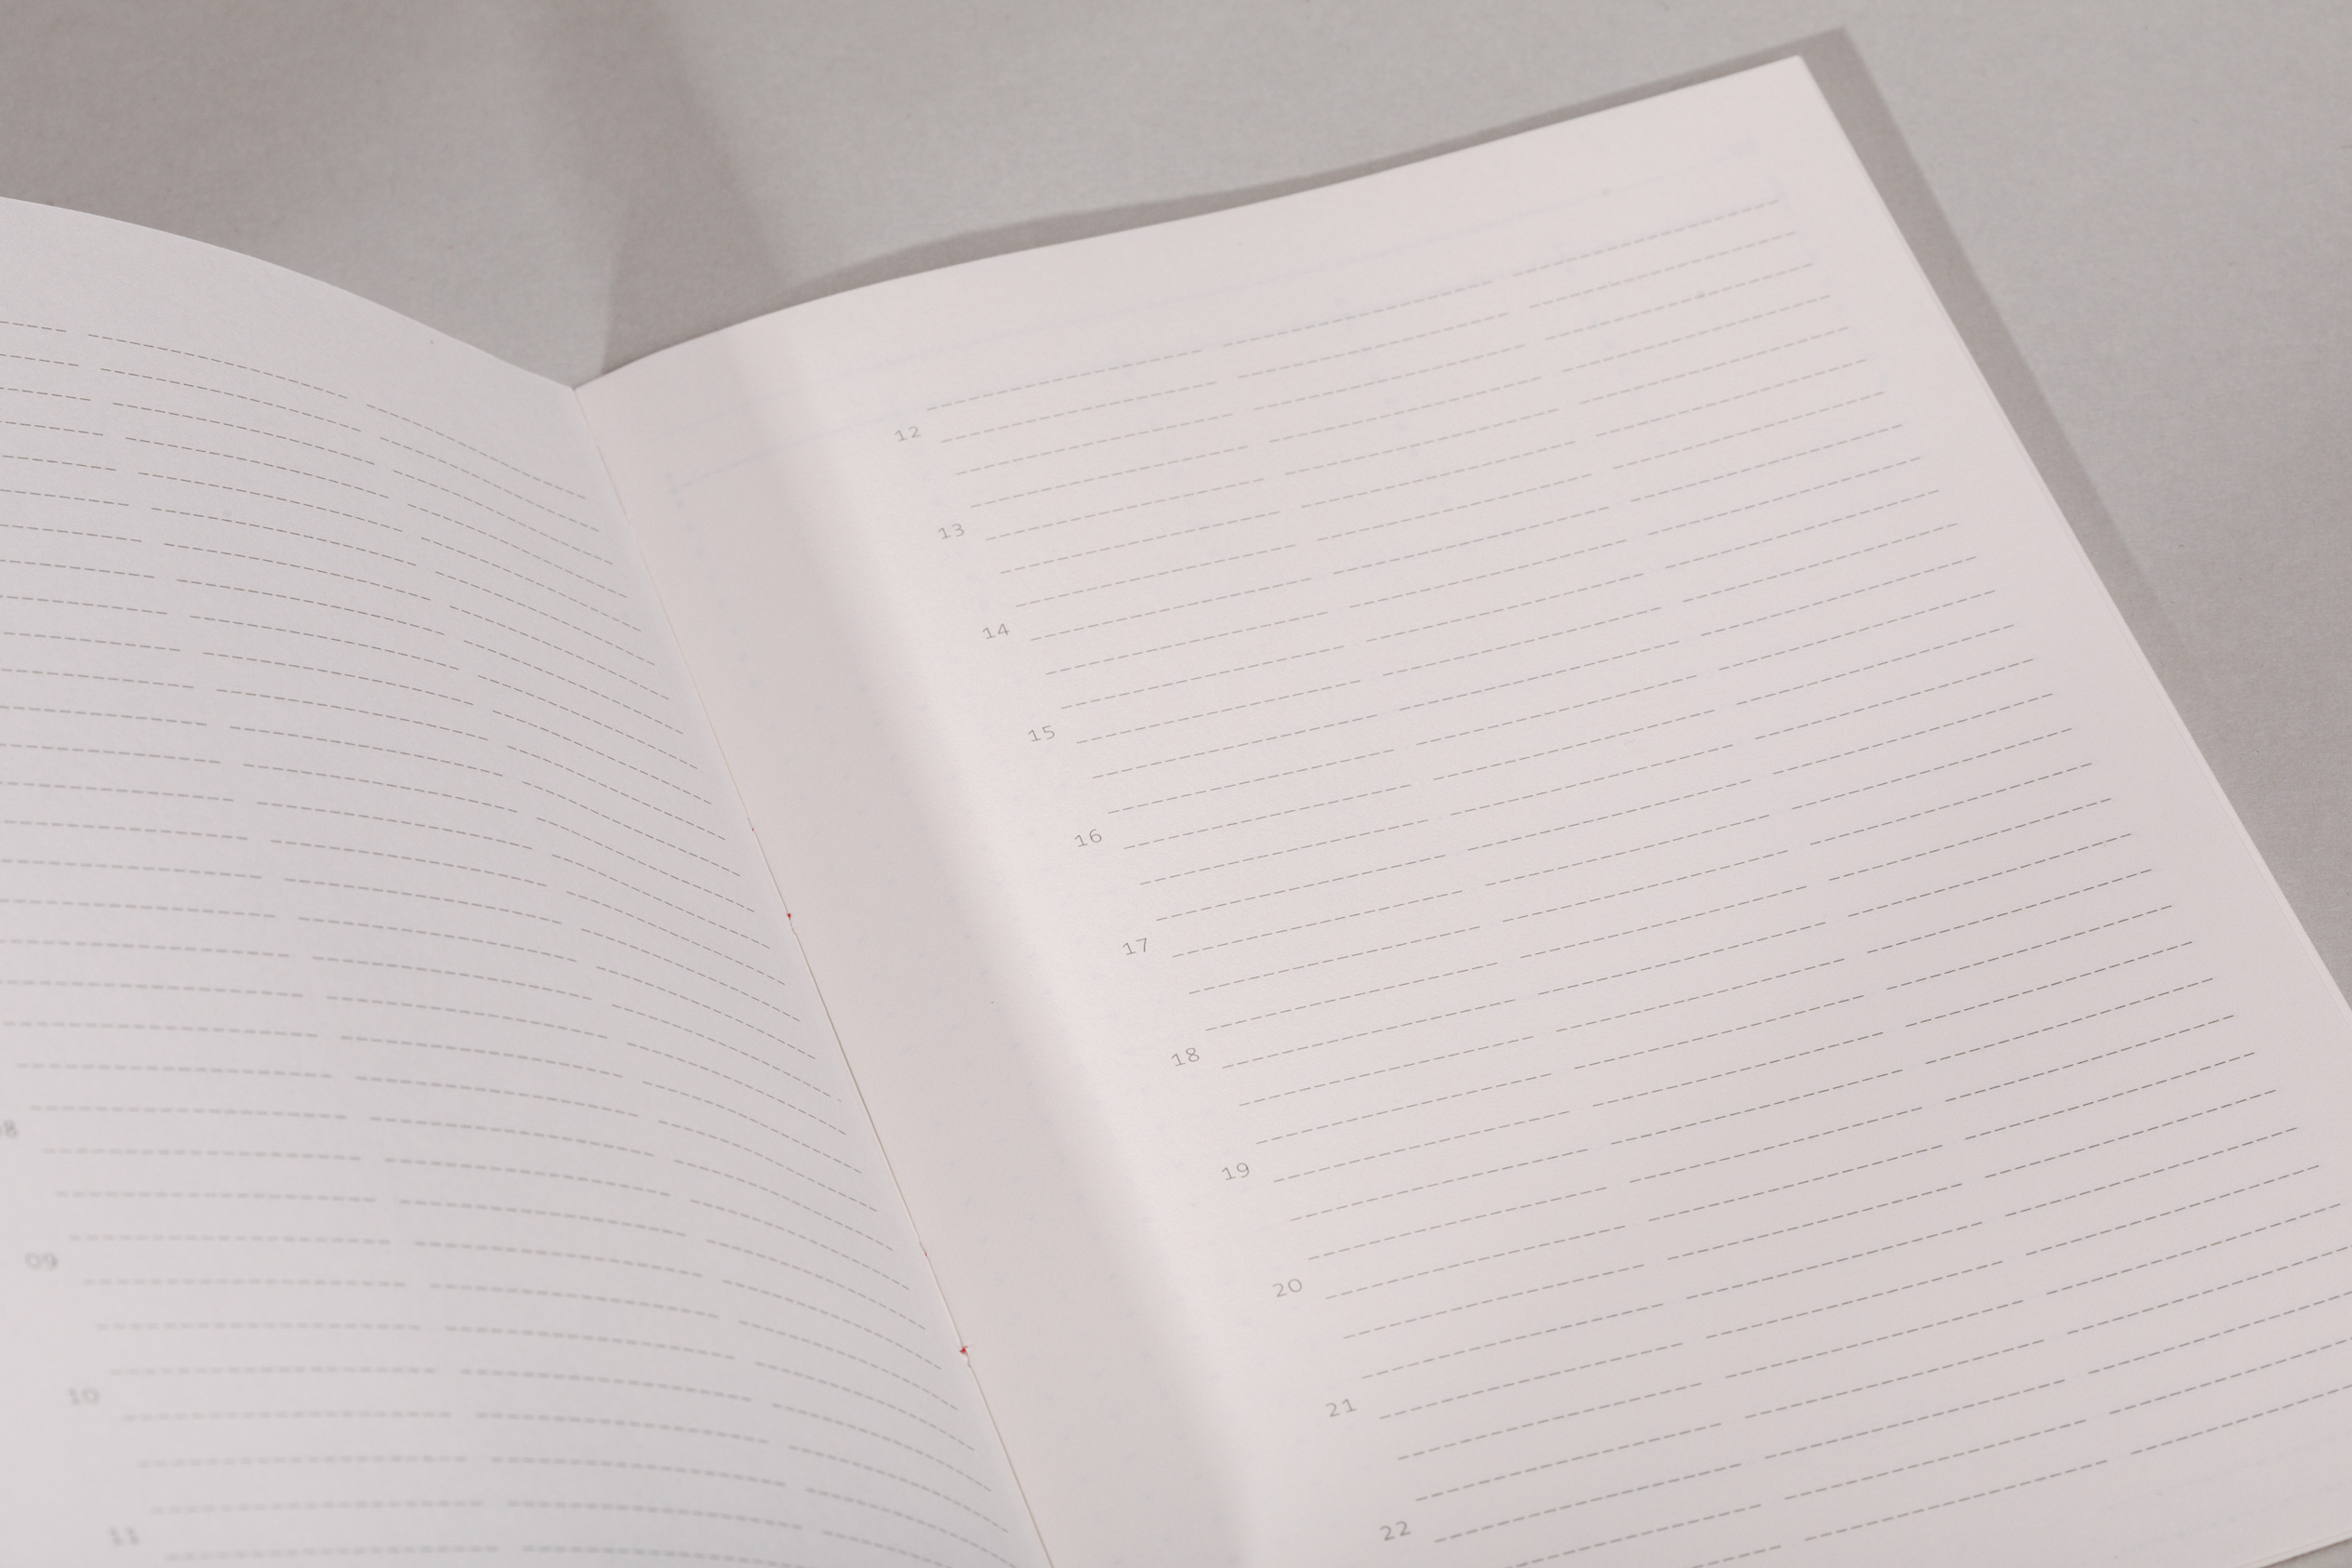 Hochwertiges Fadengeheftetes Notizbuch zur Projektplanung in A5 mit nummerierten Seiten, Zeitleiste auf jeder Doppelseite und festem Einband aus Recyclingkarton.